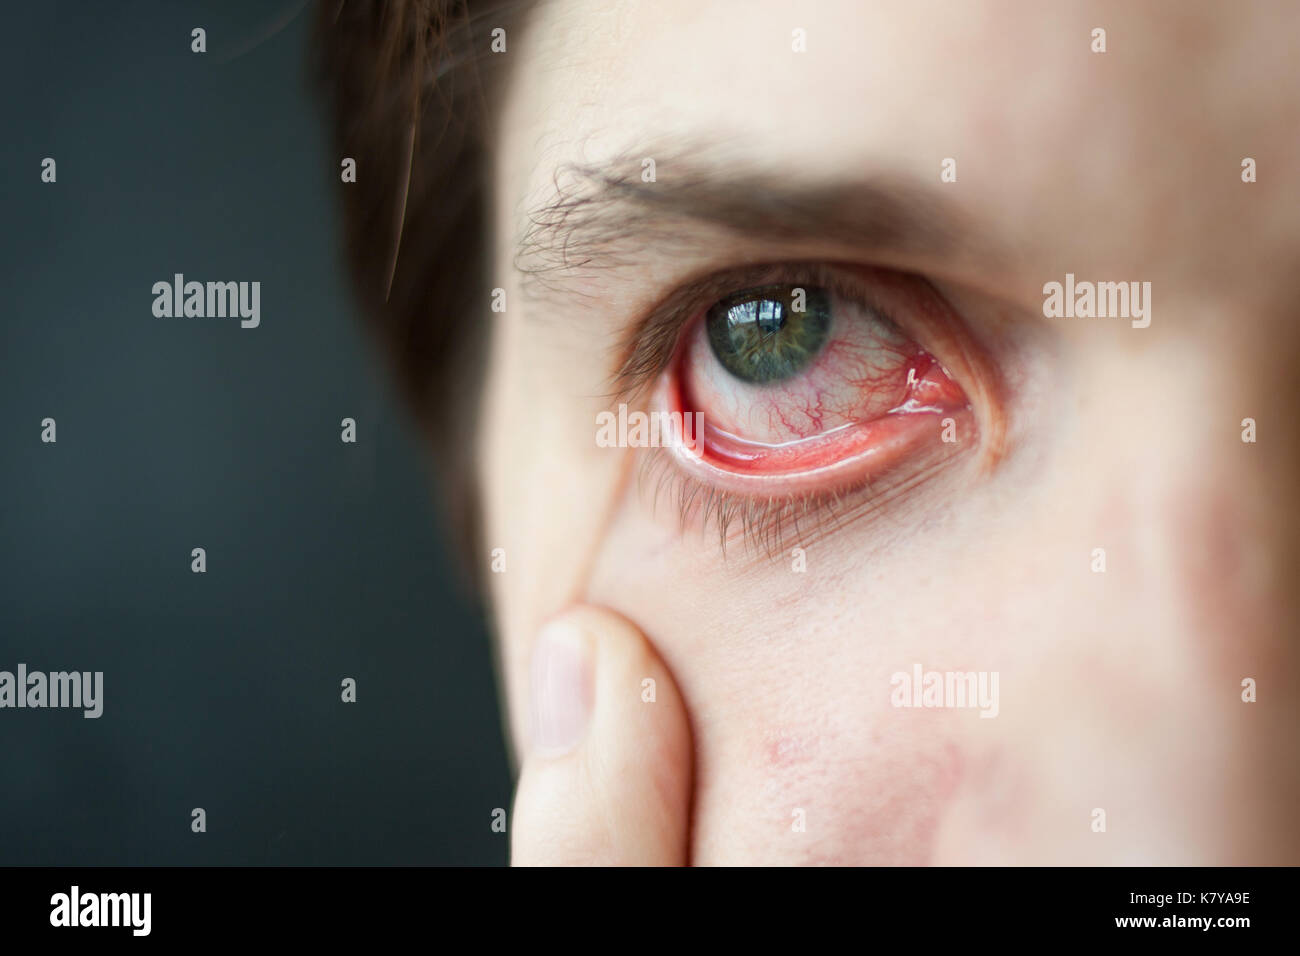 Mens red eye close-up, stanchezza, problemi con i vasi sanguigni Foto Stock